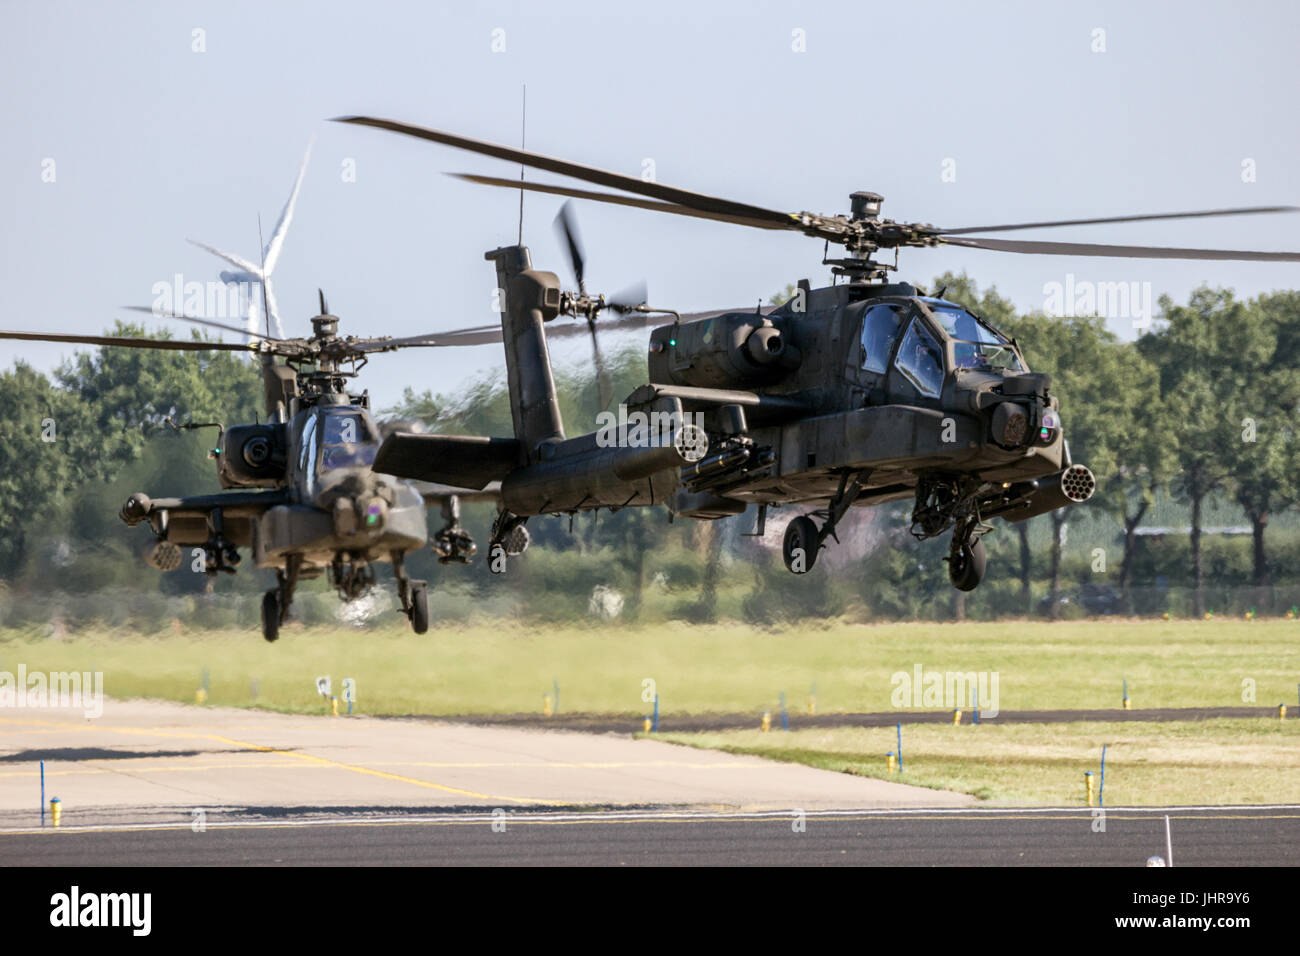 GILZE-RIJEN, Niederlande - SEP 7, 2016: Königlich niederländischen Luftwaffe Boeing AH-64 Apache Angriff Hubschrauber nehmen ab. Stockfoto